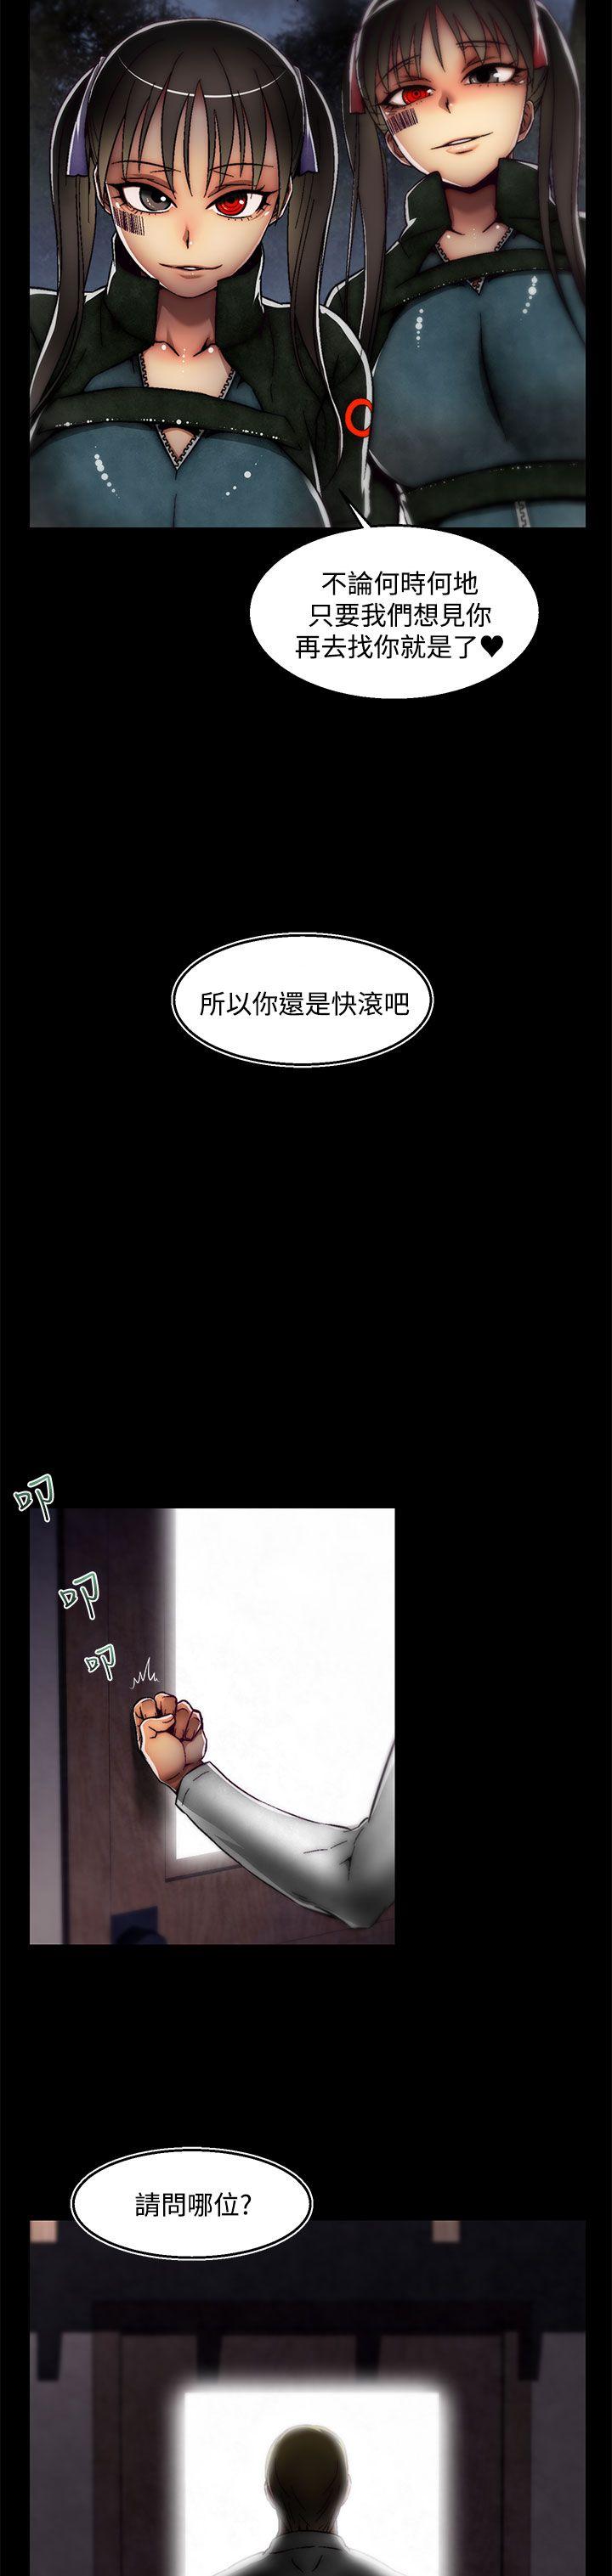 韩国污漫画 啪啪啪調教所 后记-第2话 18